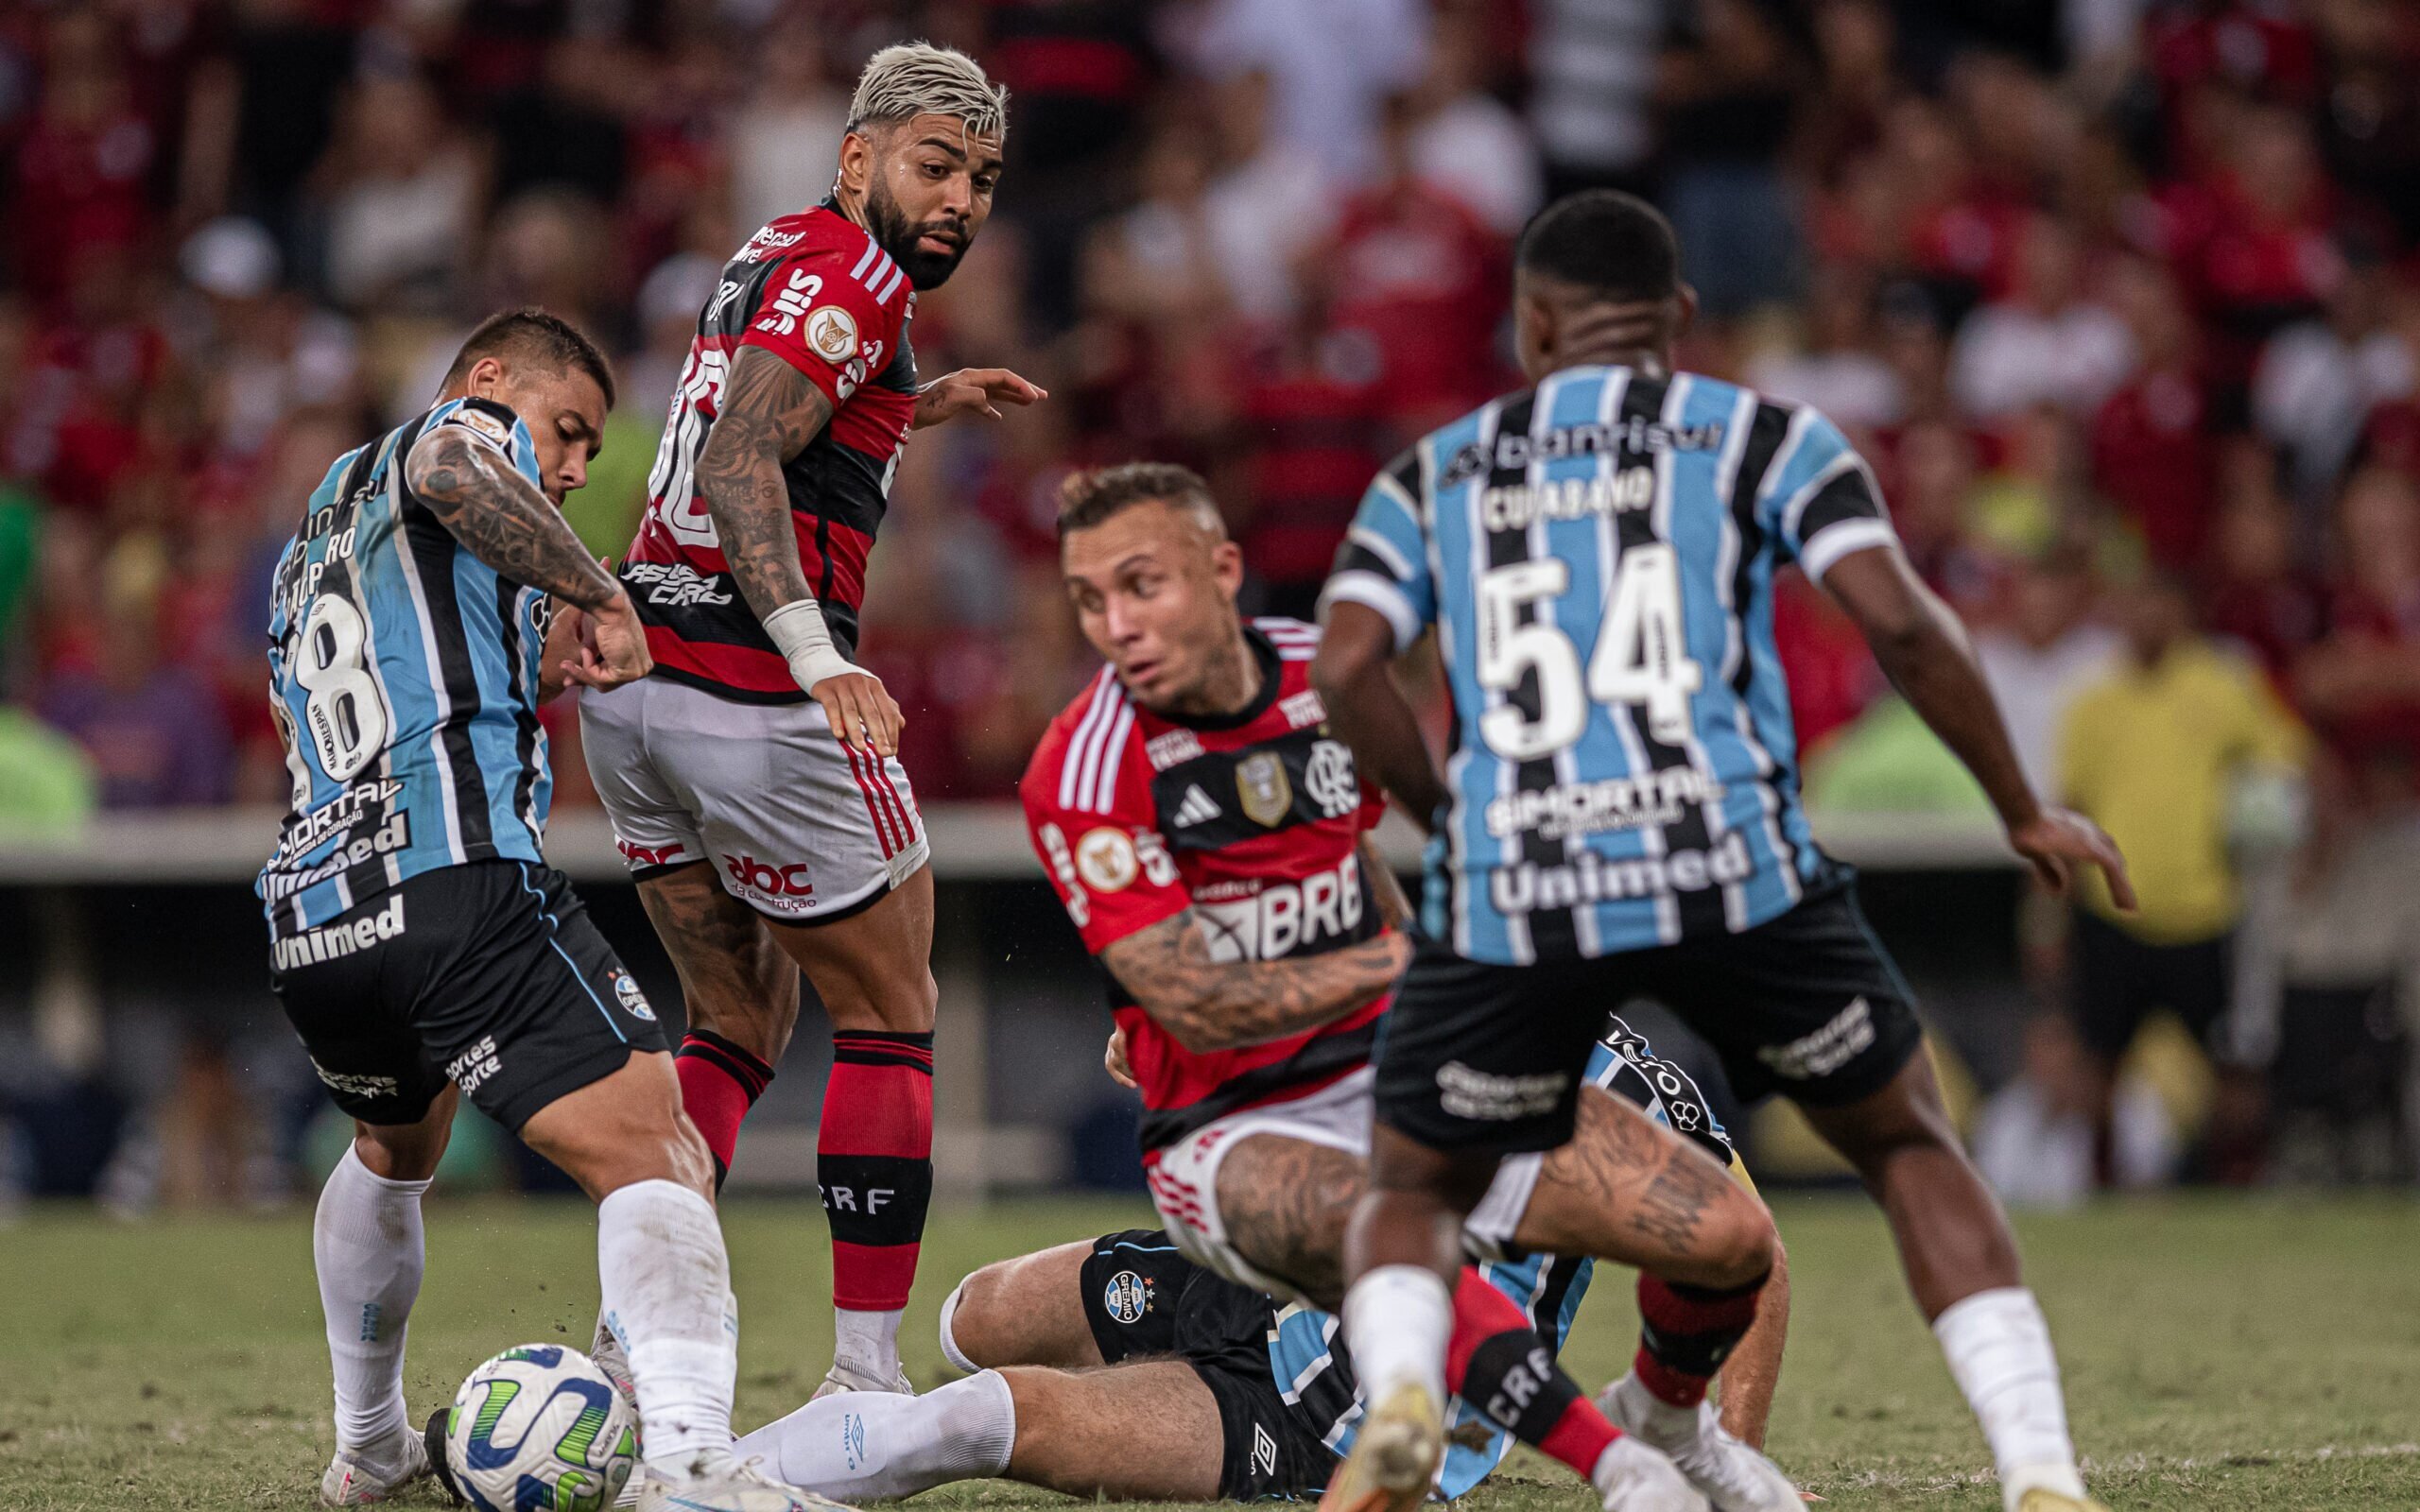 Flamengo on X: O retrospecto do #FORxFLA é favorável ao Mais Querido!  #VamosFlamengo  / X